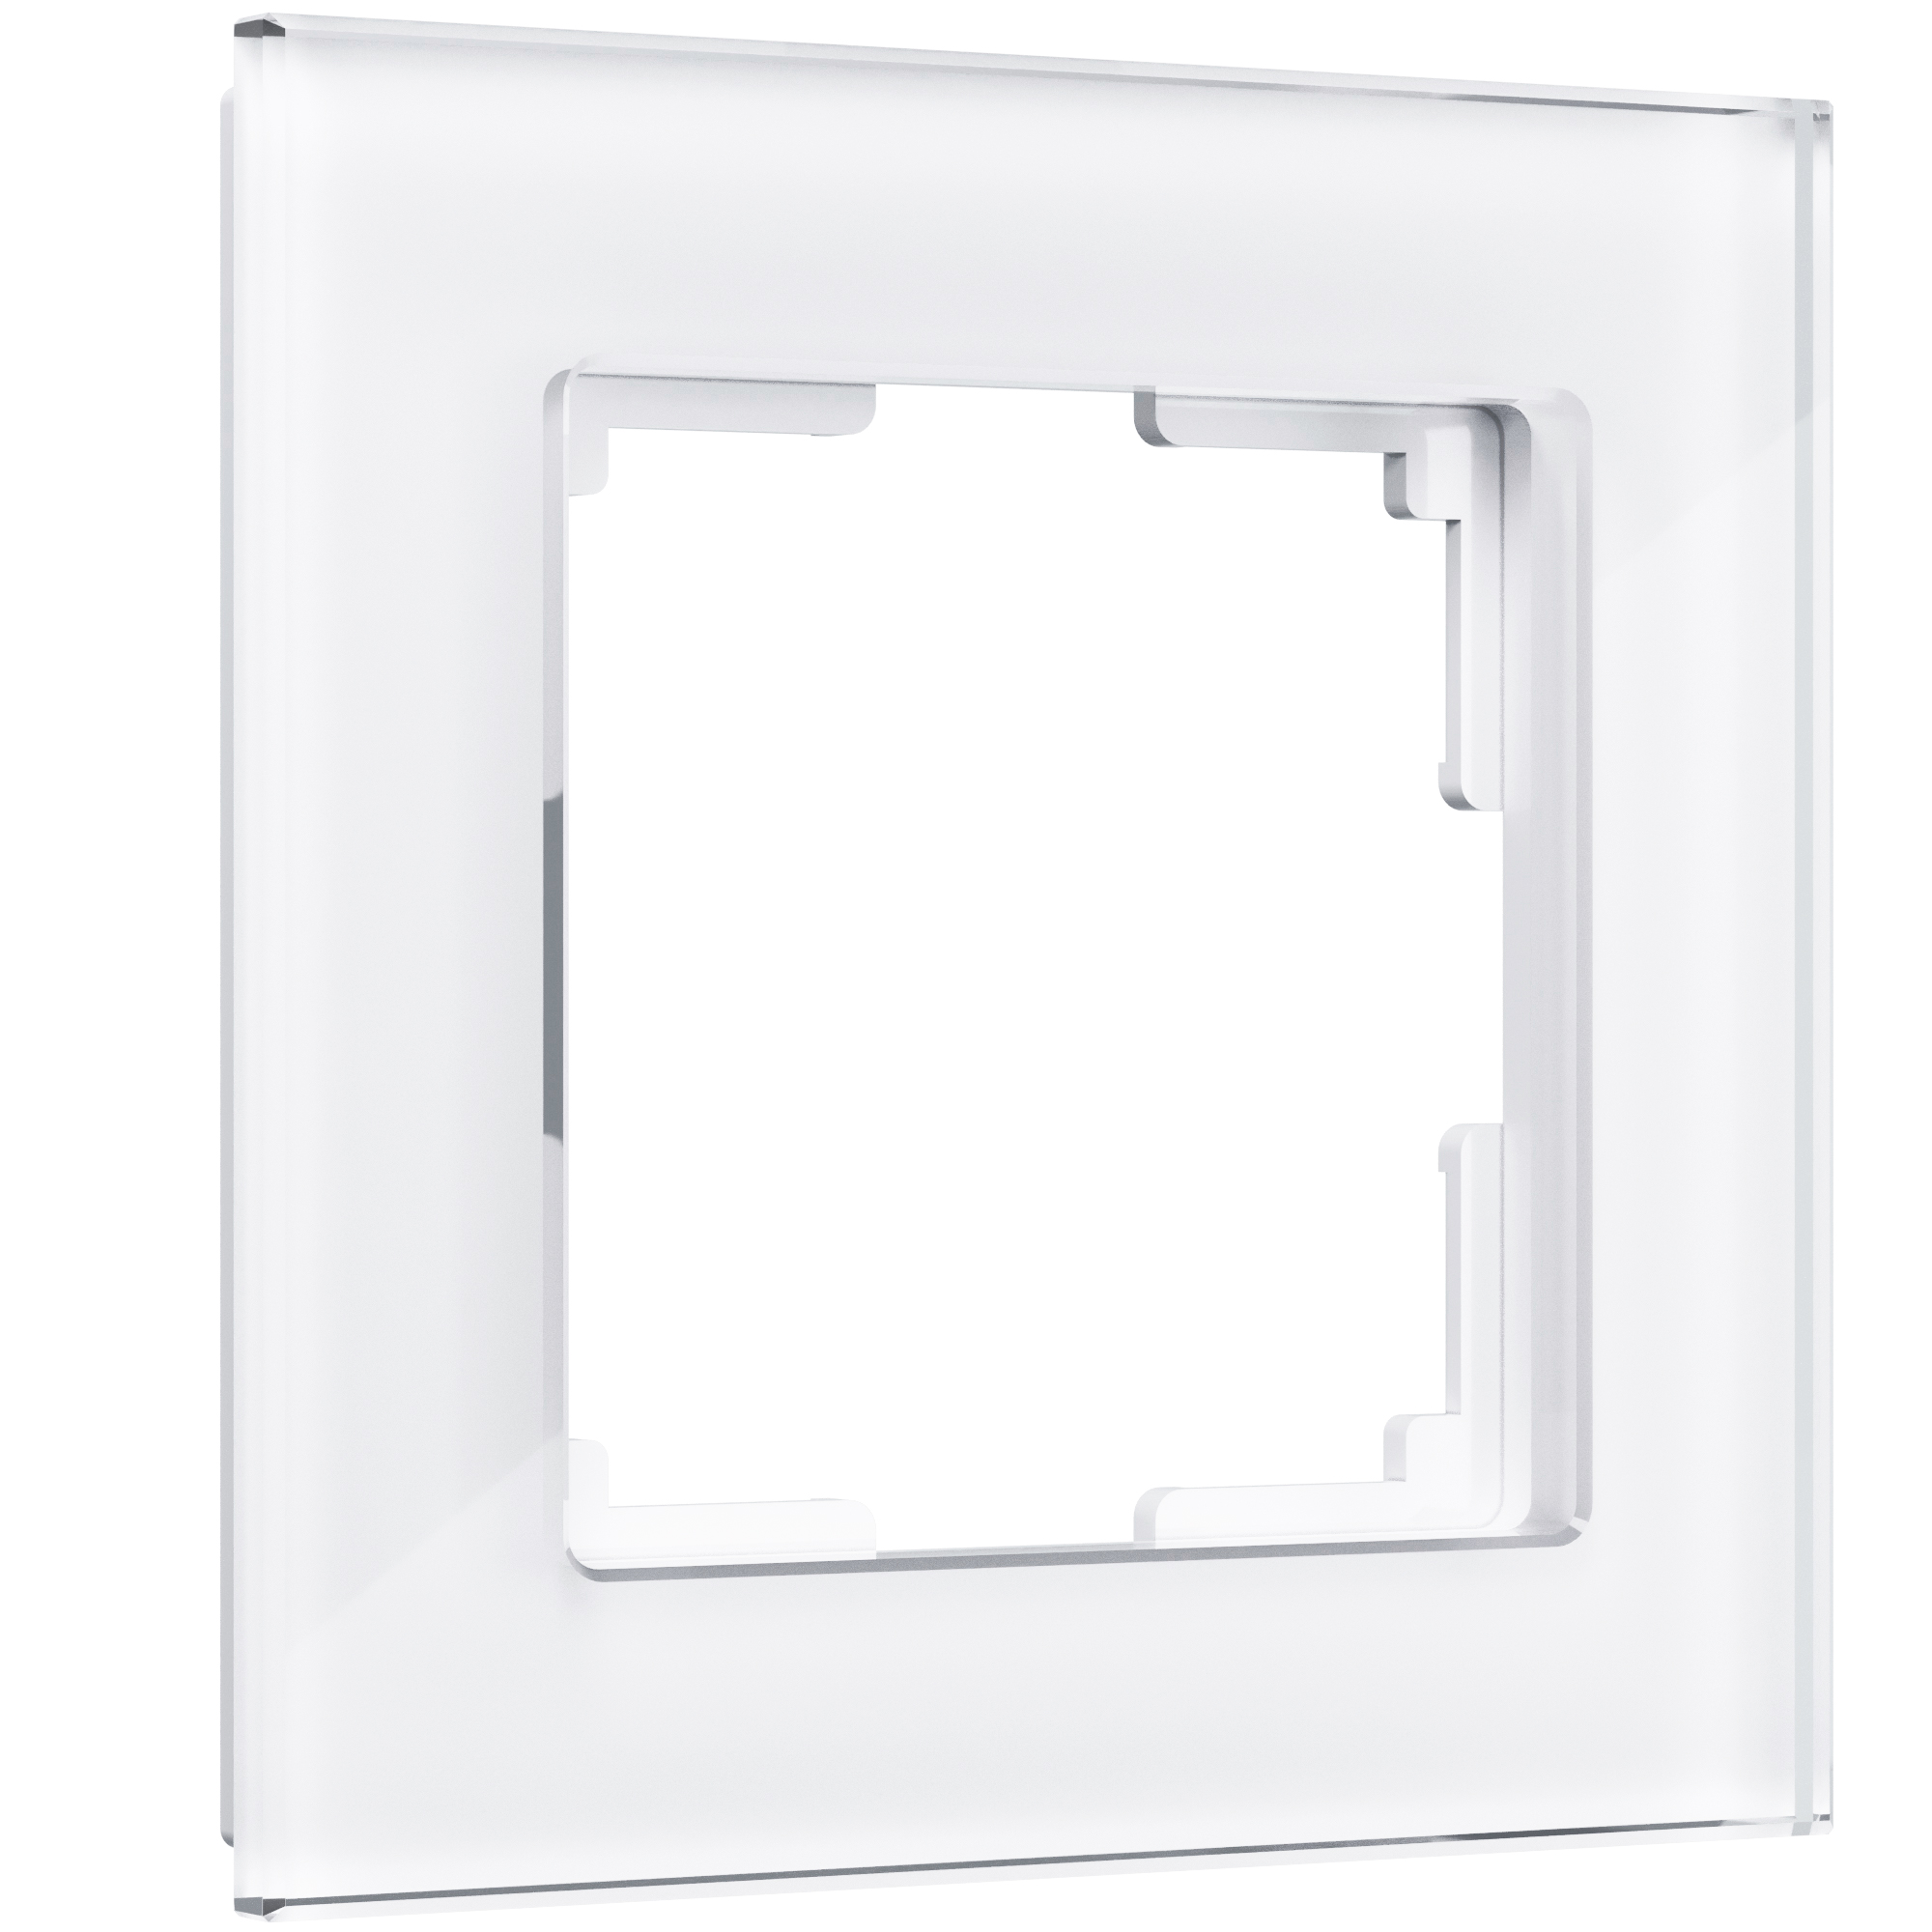 Рамка для розетки / выключателя на 1 пост Werkel W0011101 Favorit белый стекло рамка на 1 пост werkel metallic w0011602 4690389159022